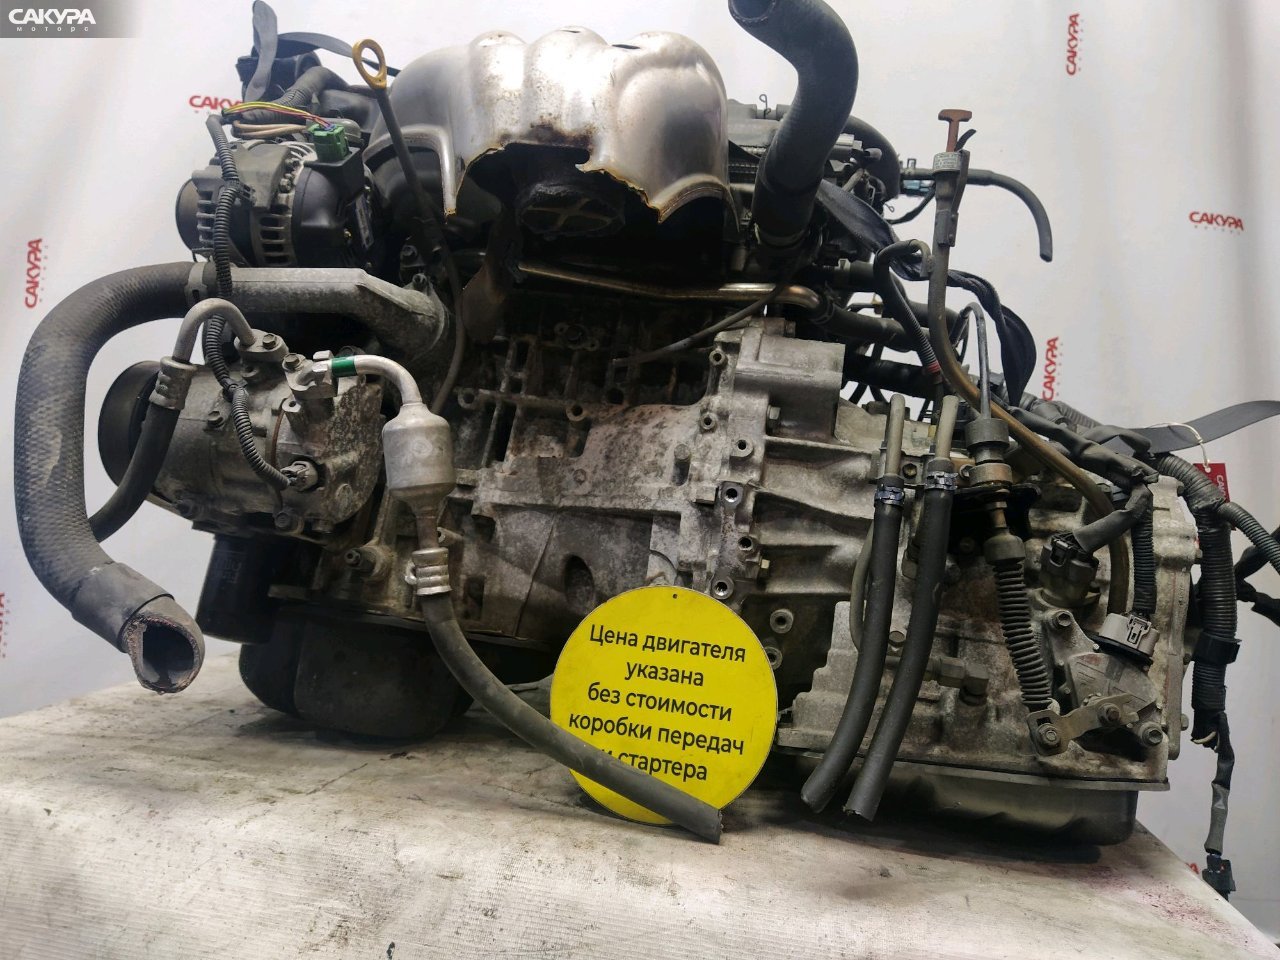 Двигатель Toyota Estima ACR40W 2AZ-FE: купить в Сакура Красноярск.